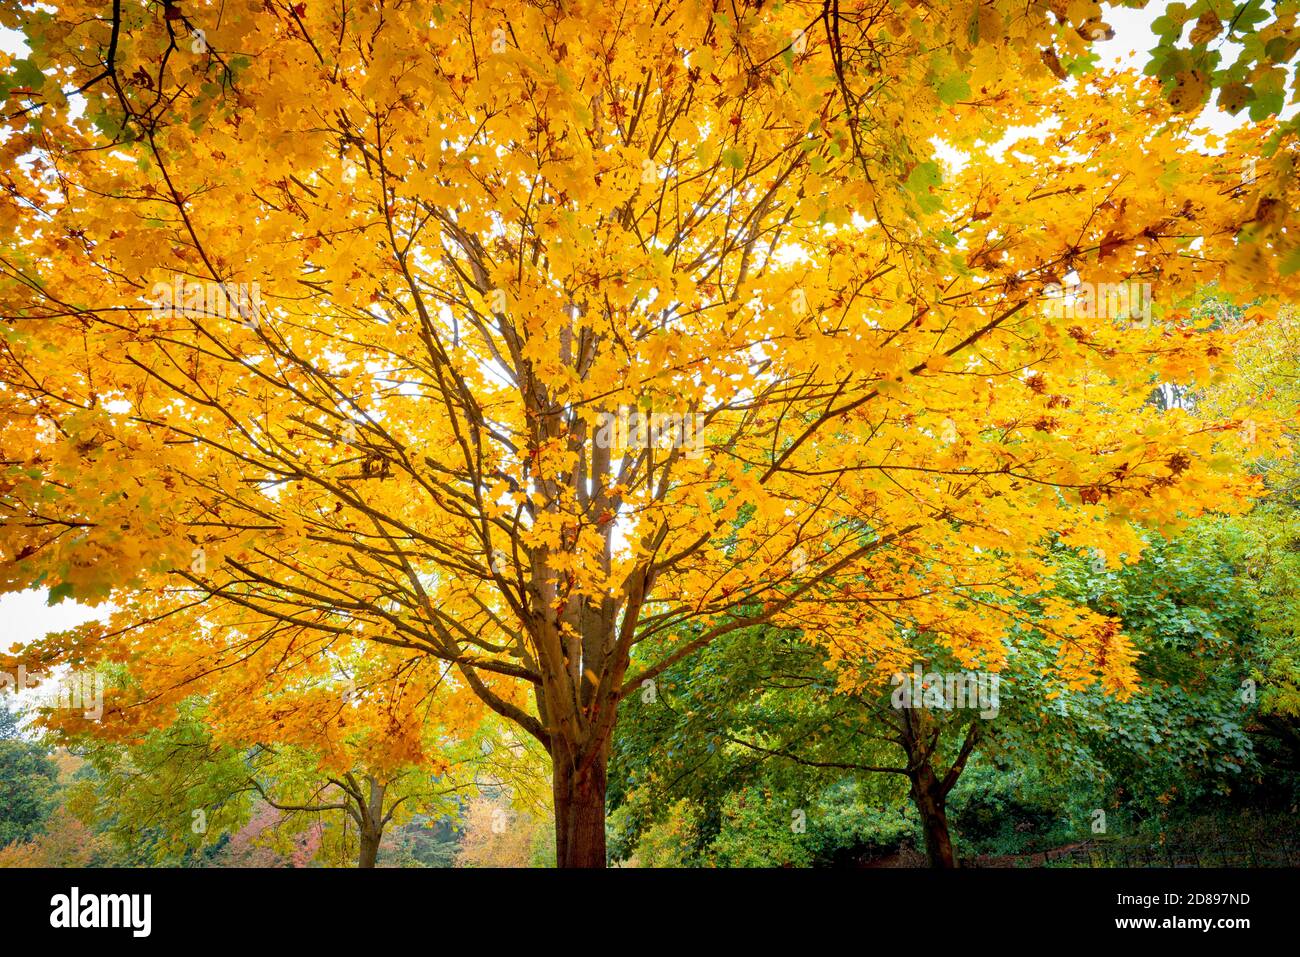 Arbre d'automne avec feuilles jaunes.Bramcote Hills Park Nottingham Angleterre Royaume-Uni Banque D'Images